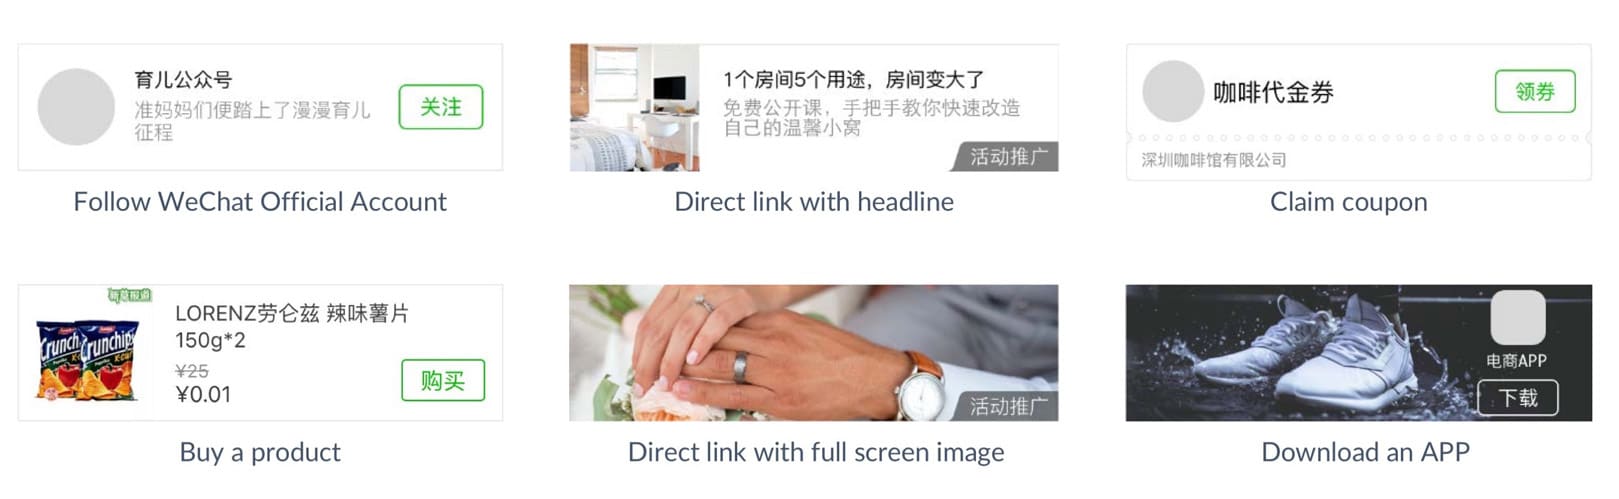 WeChat-banner-advertising